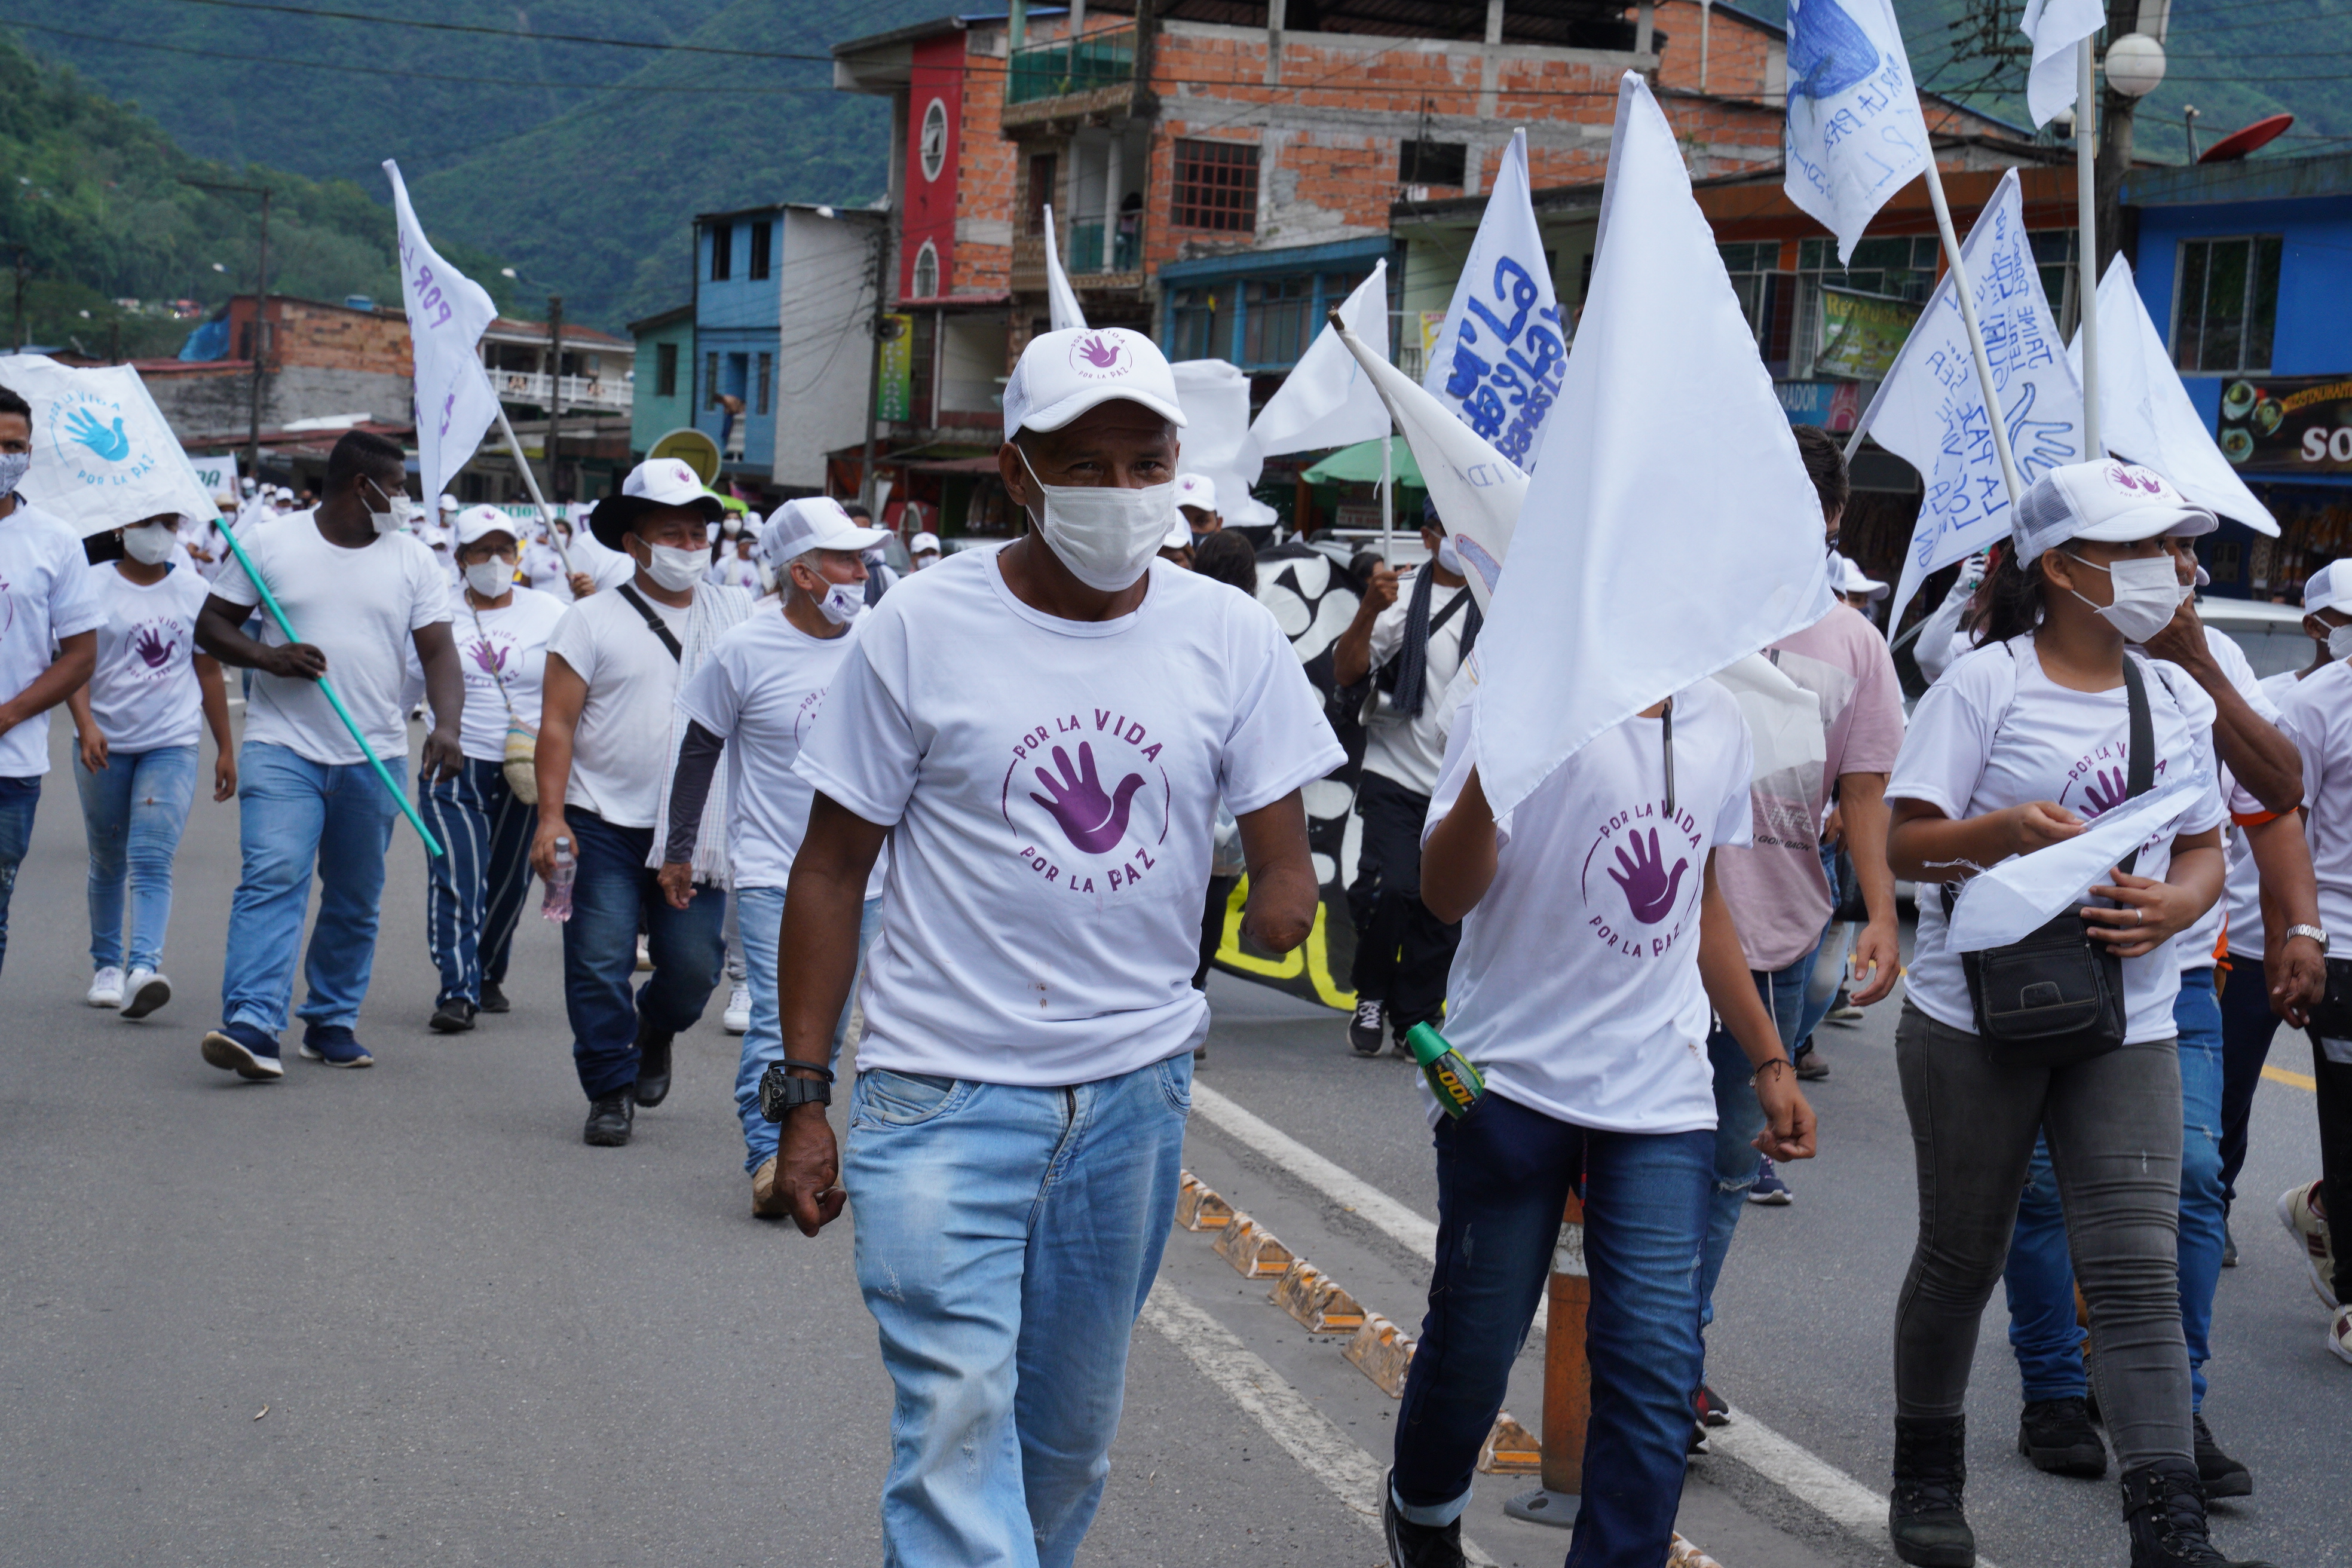 31 октября группа бывших бойцов Farc из провинций Мета и Гуавьяре марширует через небольшой городок Гуаябеталь, Колумбия.